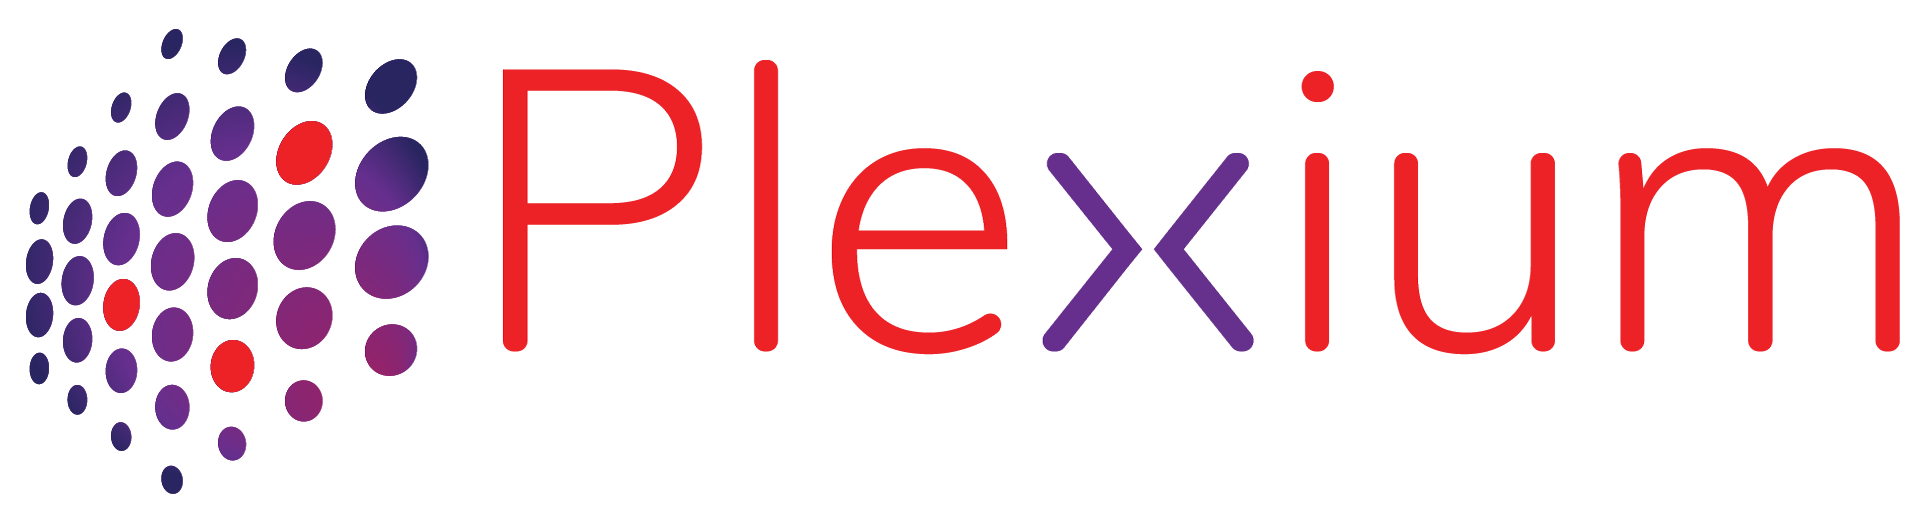 Plexium